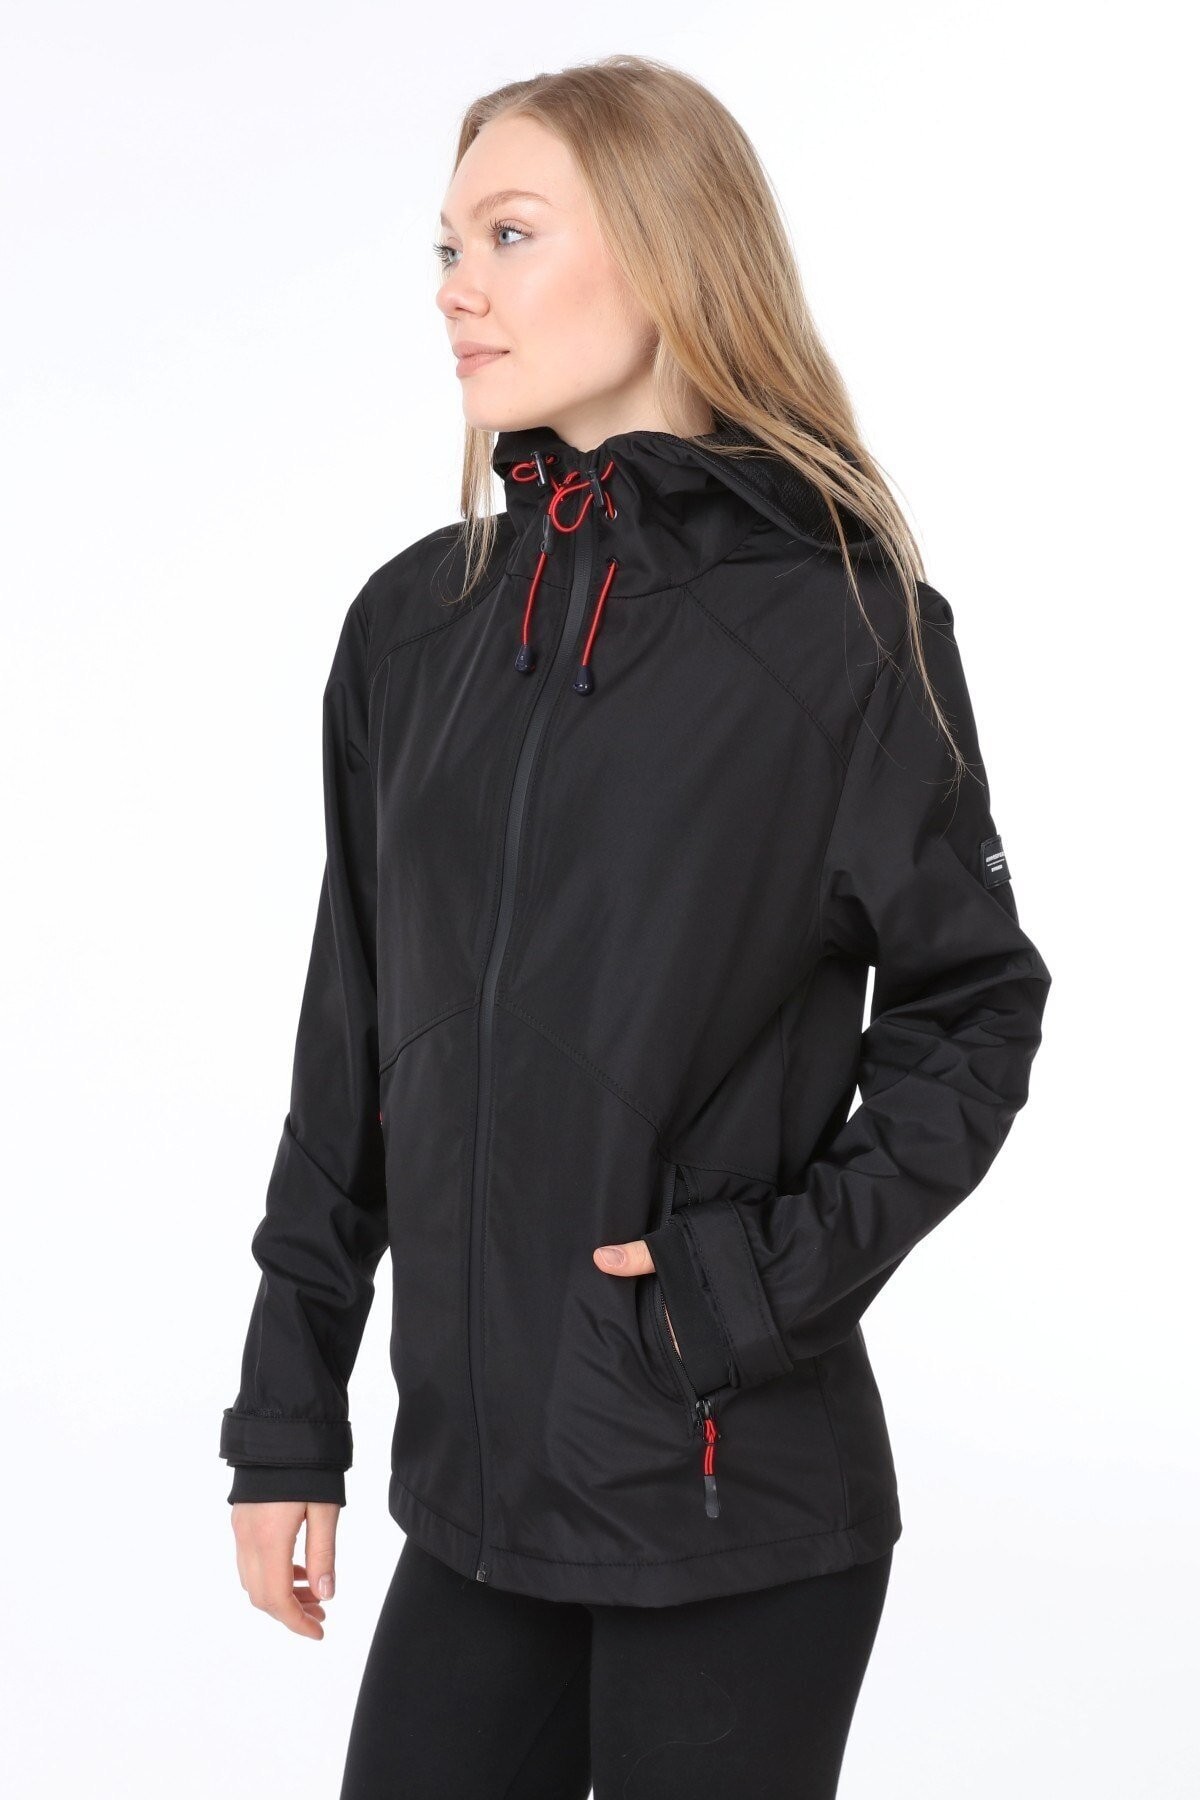 Ghassy Co.Kadın Rüzgarlık/Yağmurluk Omuz Detaylı Mevsimlik Taş Spor Ceket - SİYAH